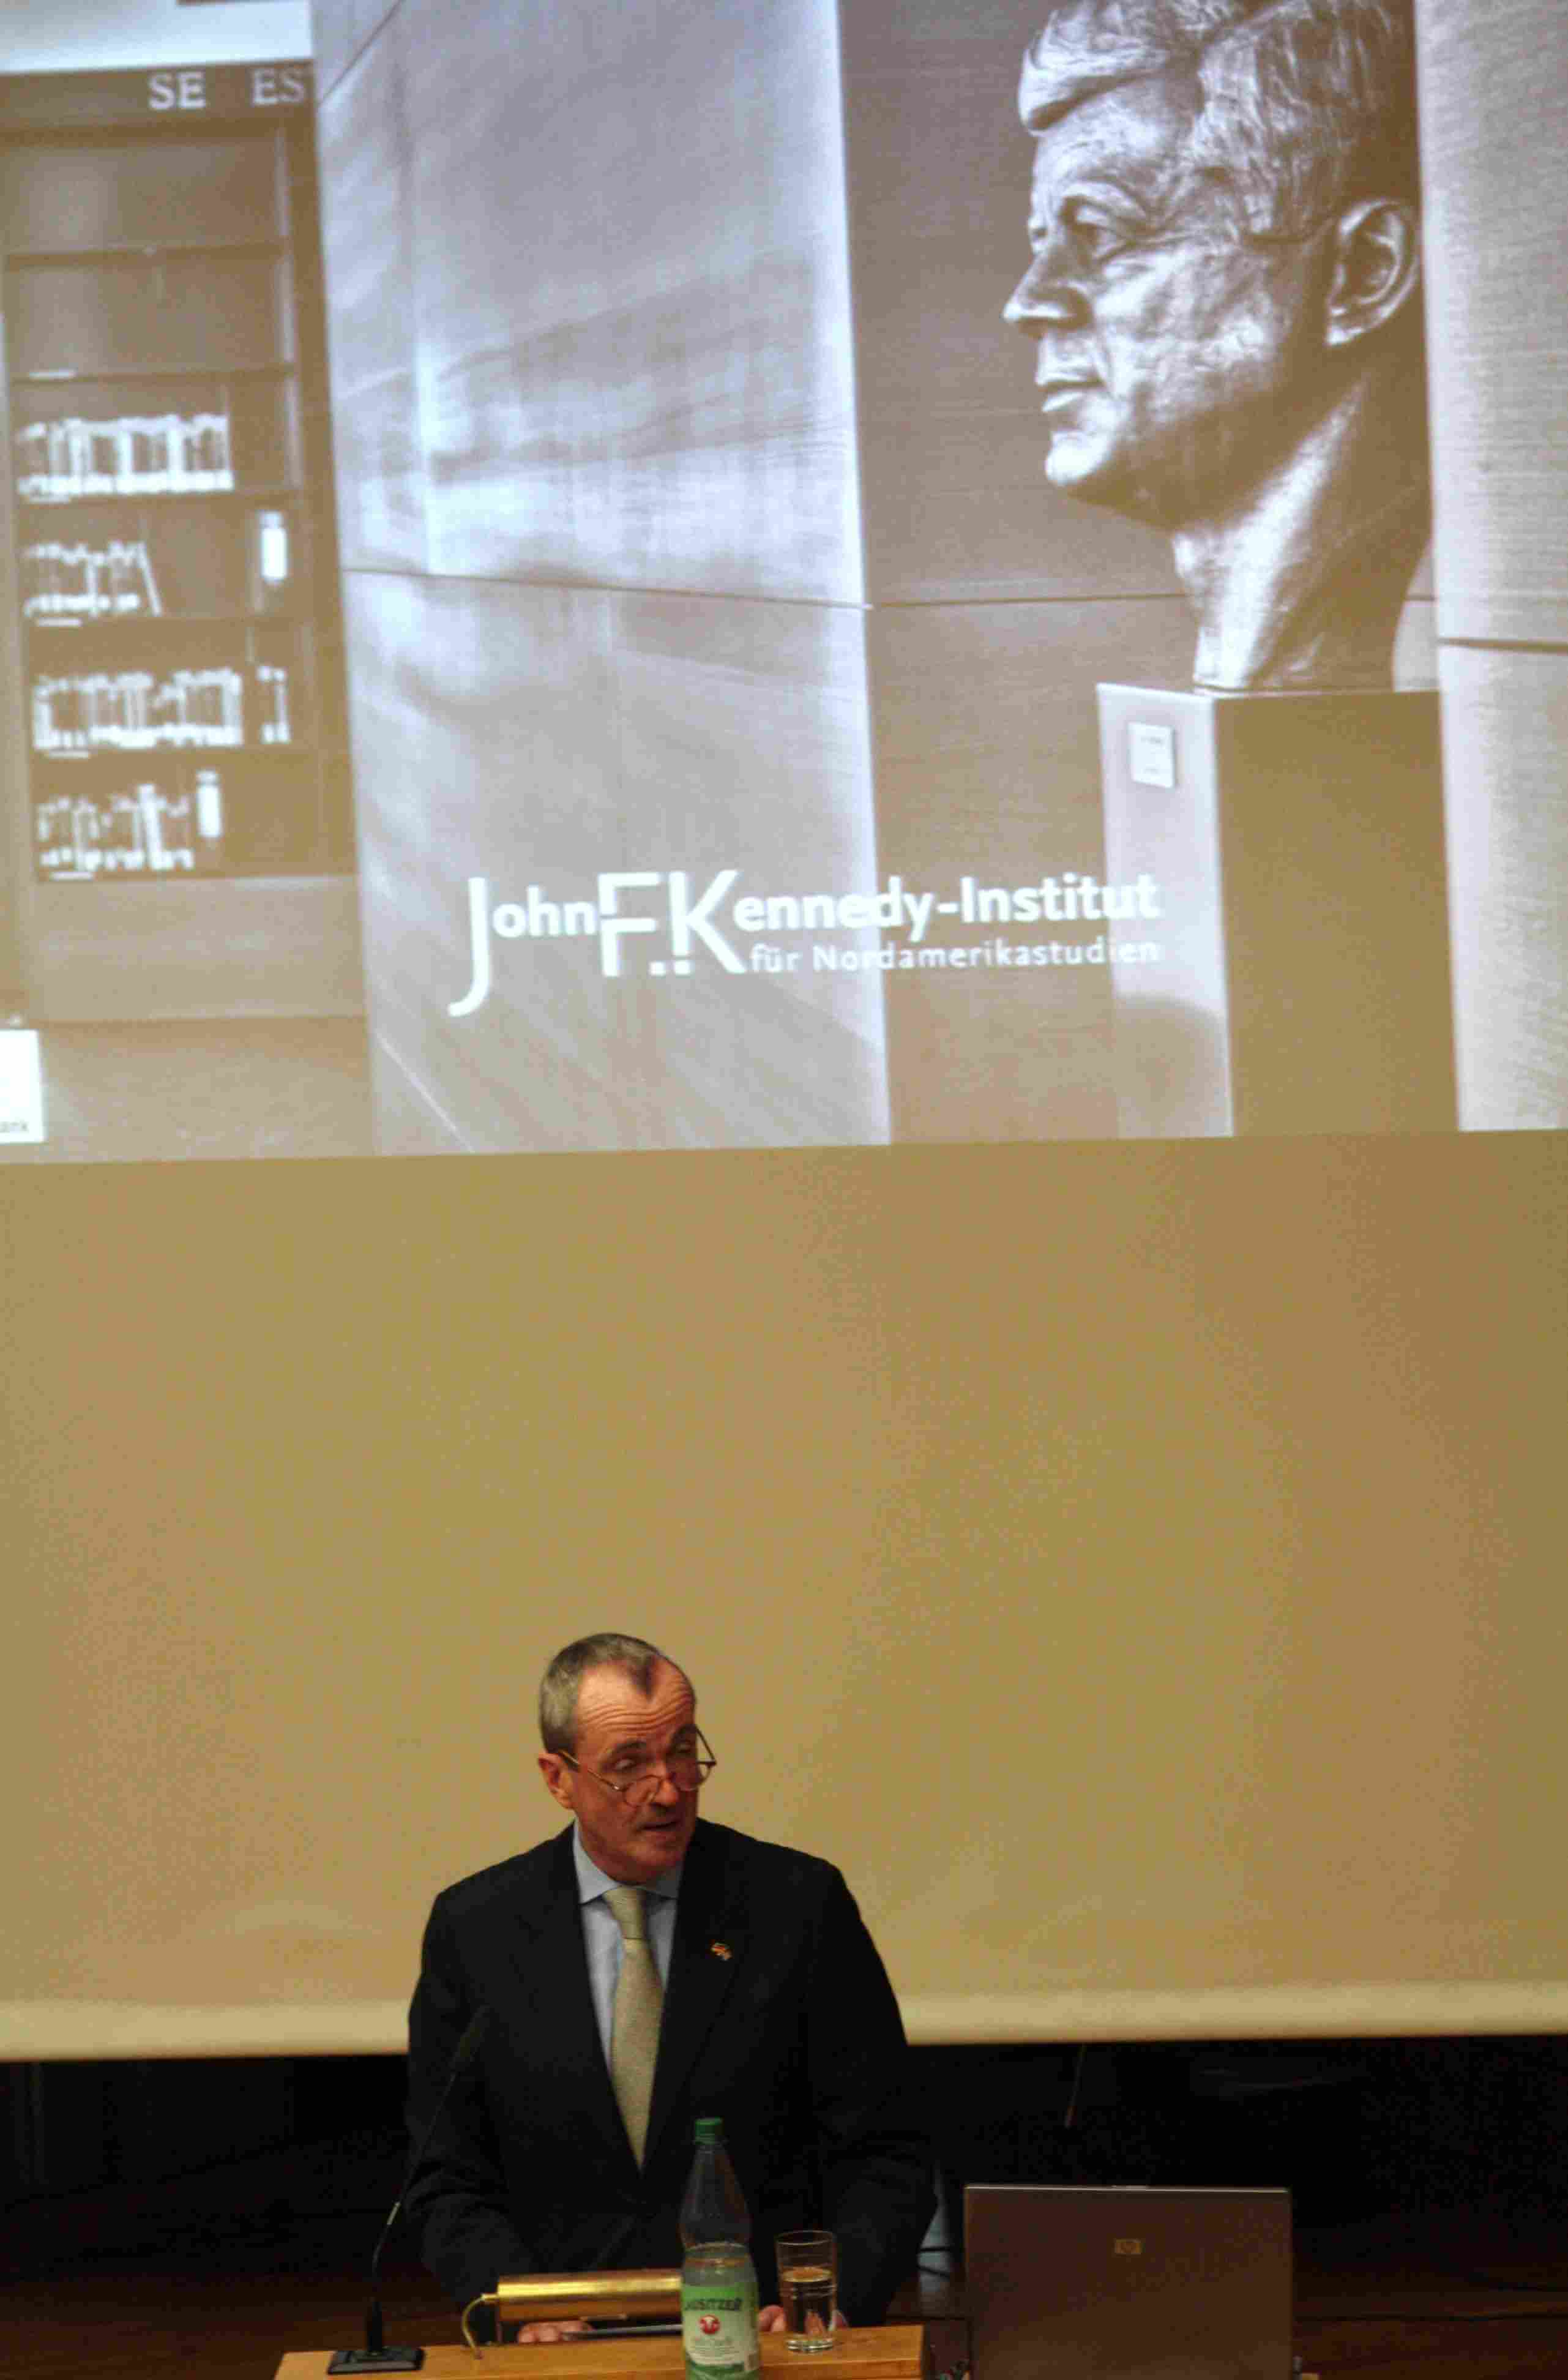 Kennedy-Institut feiert drei Tage lang Präsidentenbesuch und Gründung vor 50 Jahren